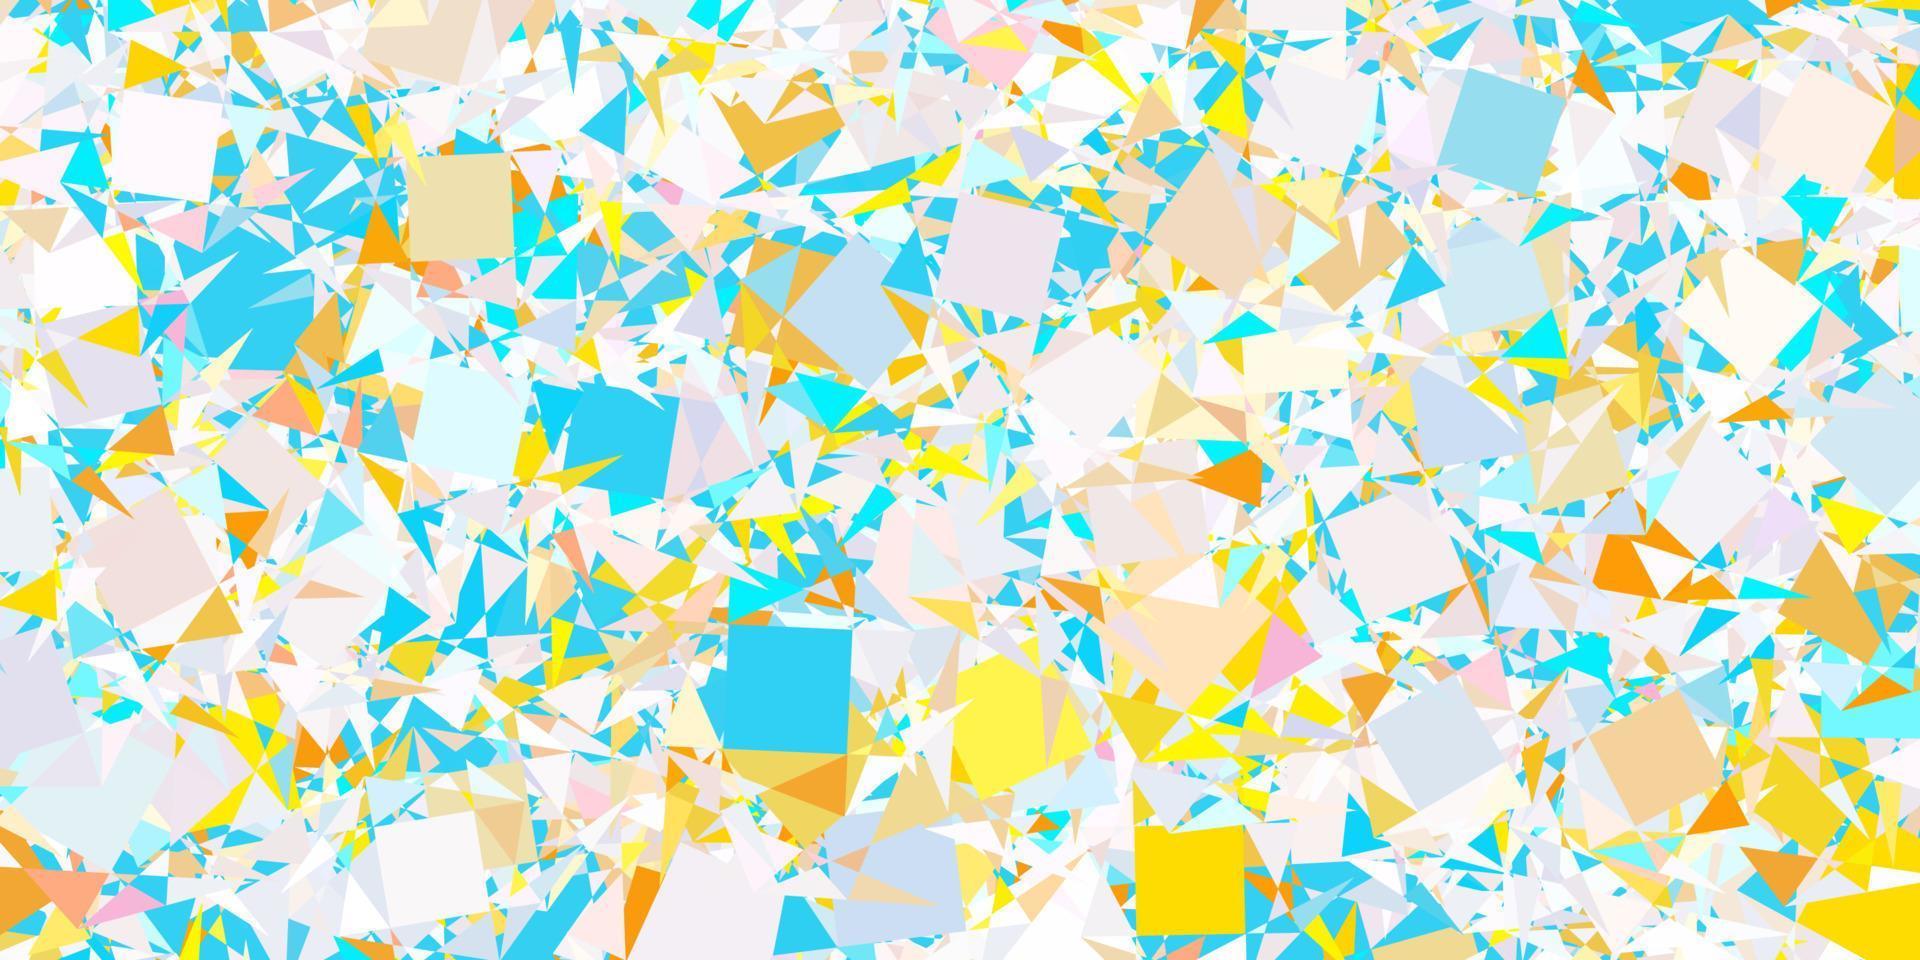 ljusblått, gult vektormönster med polygonala former. vektor